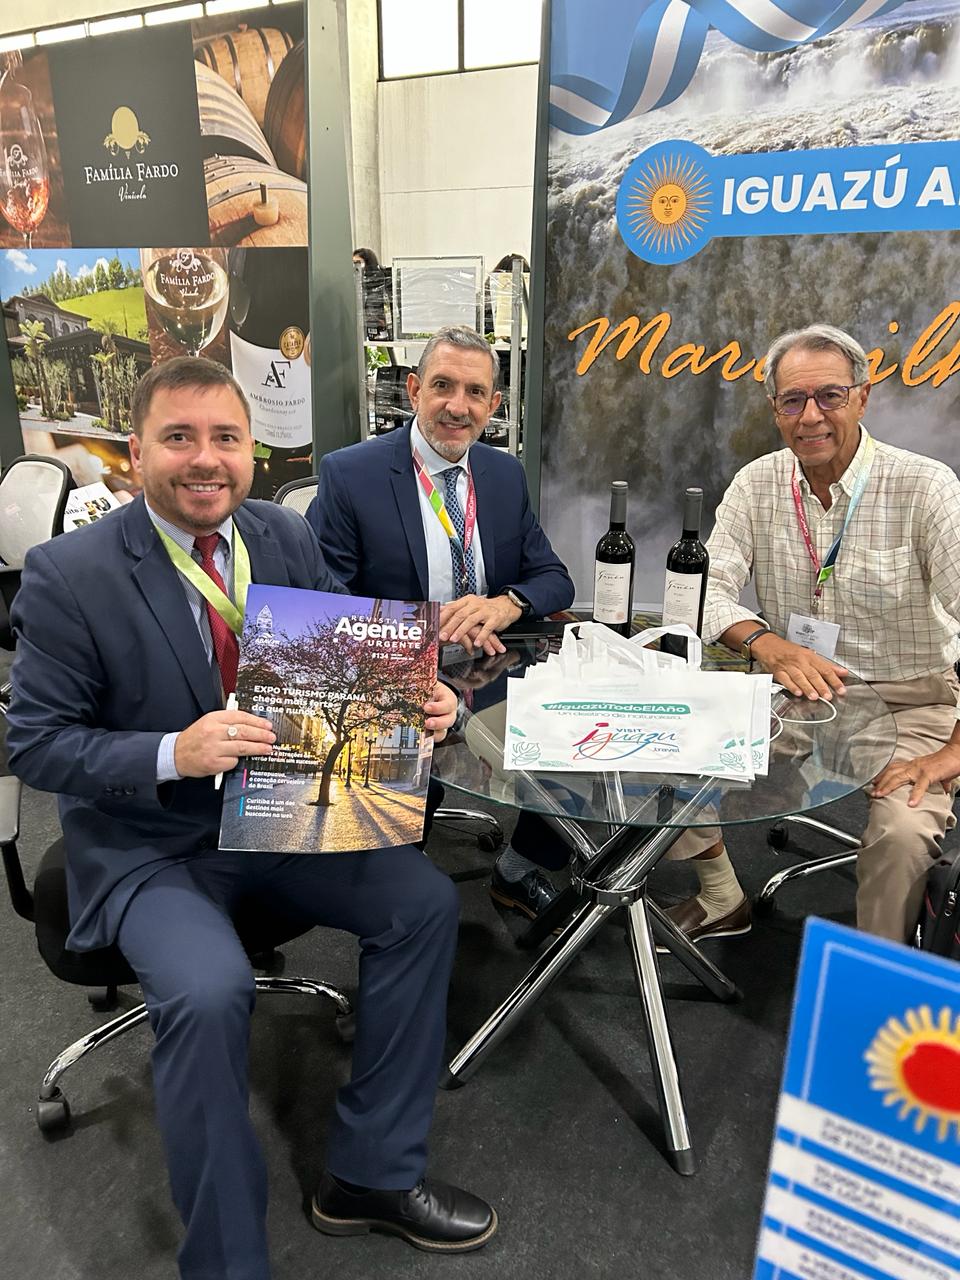 El destino Iguazú se promociona en la Expo Turismo Paraná Brasil